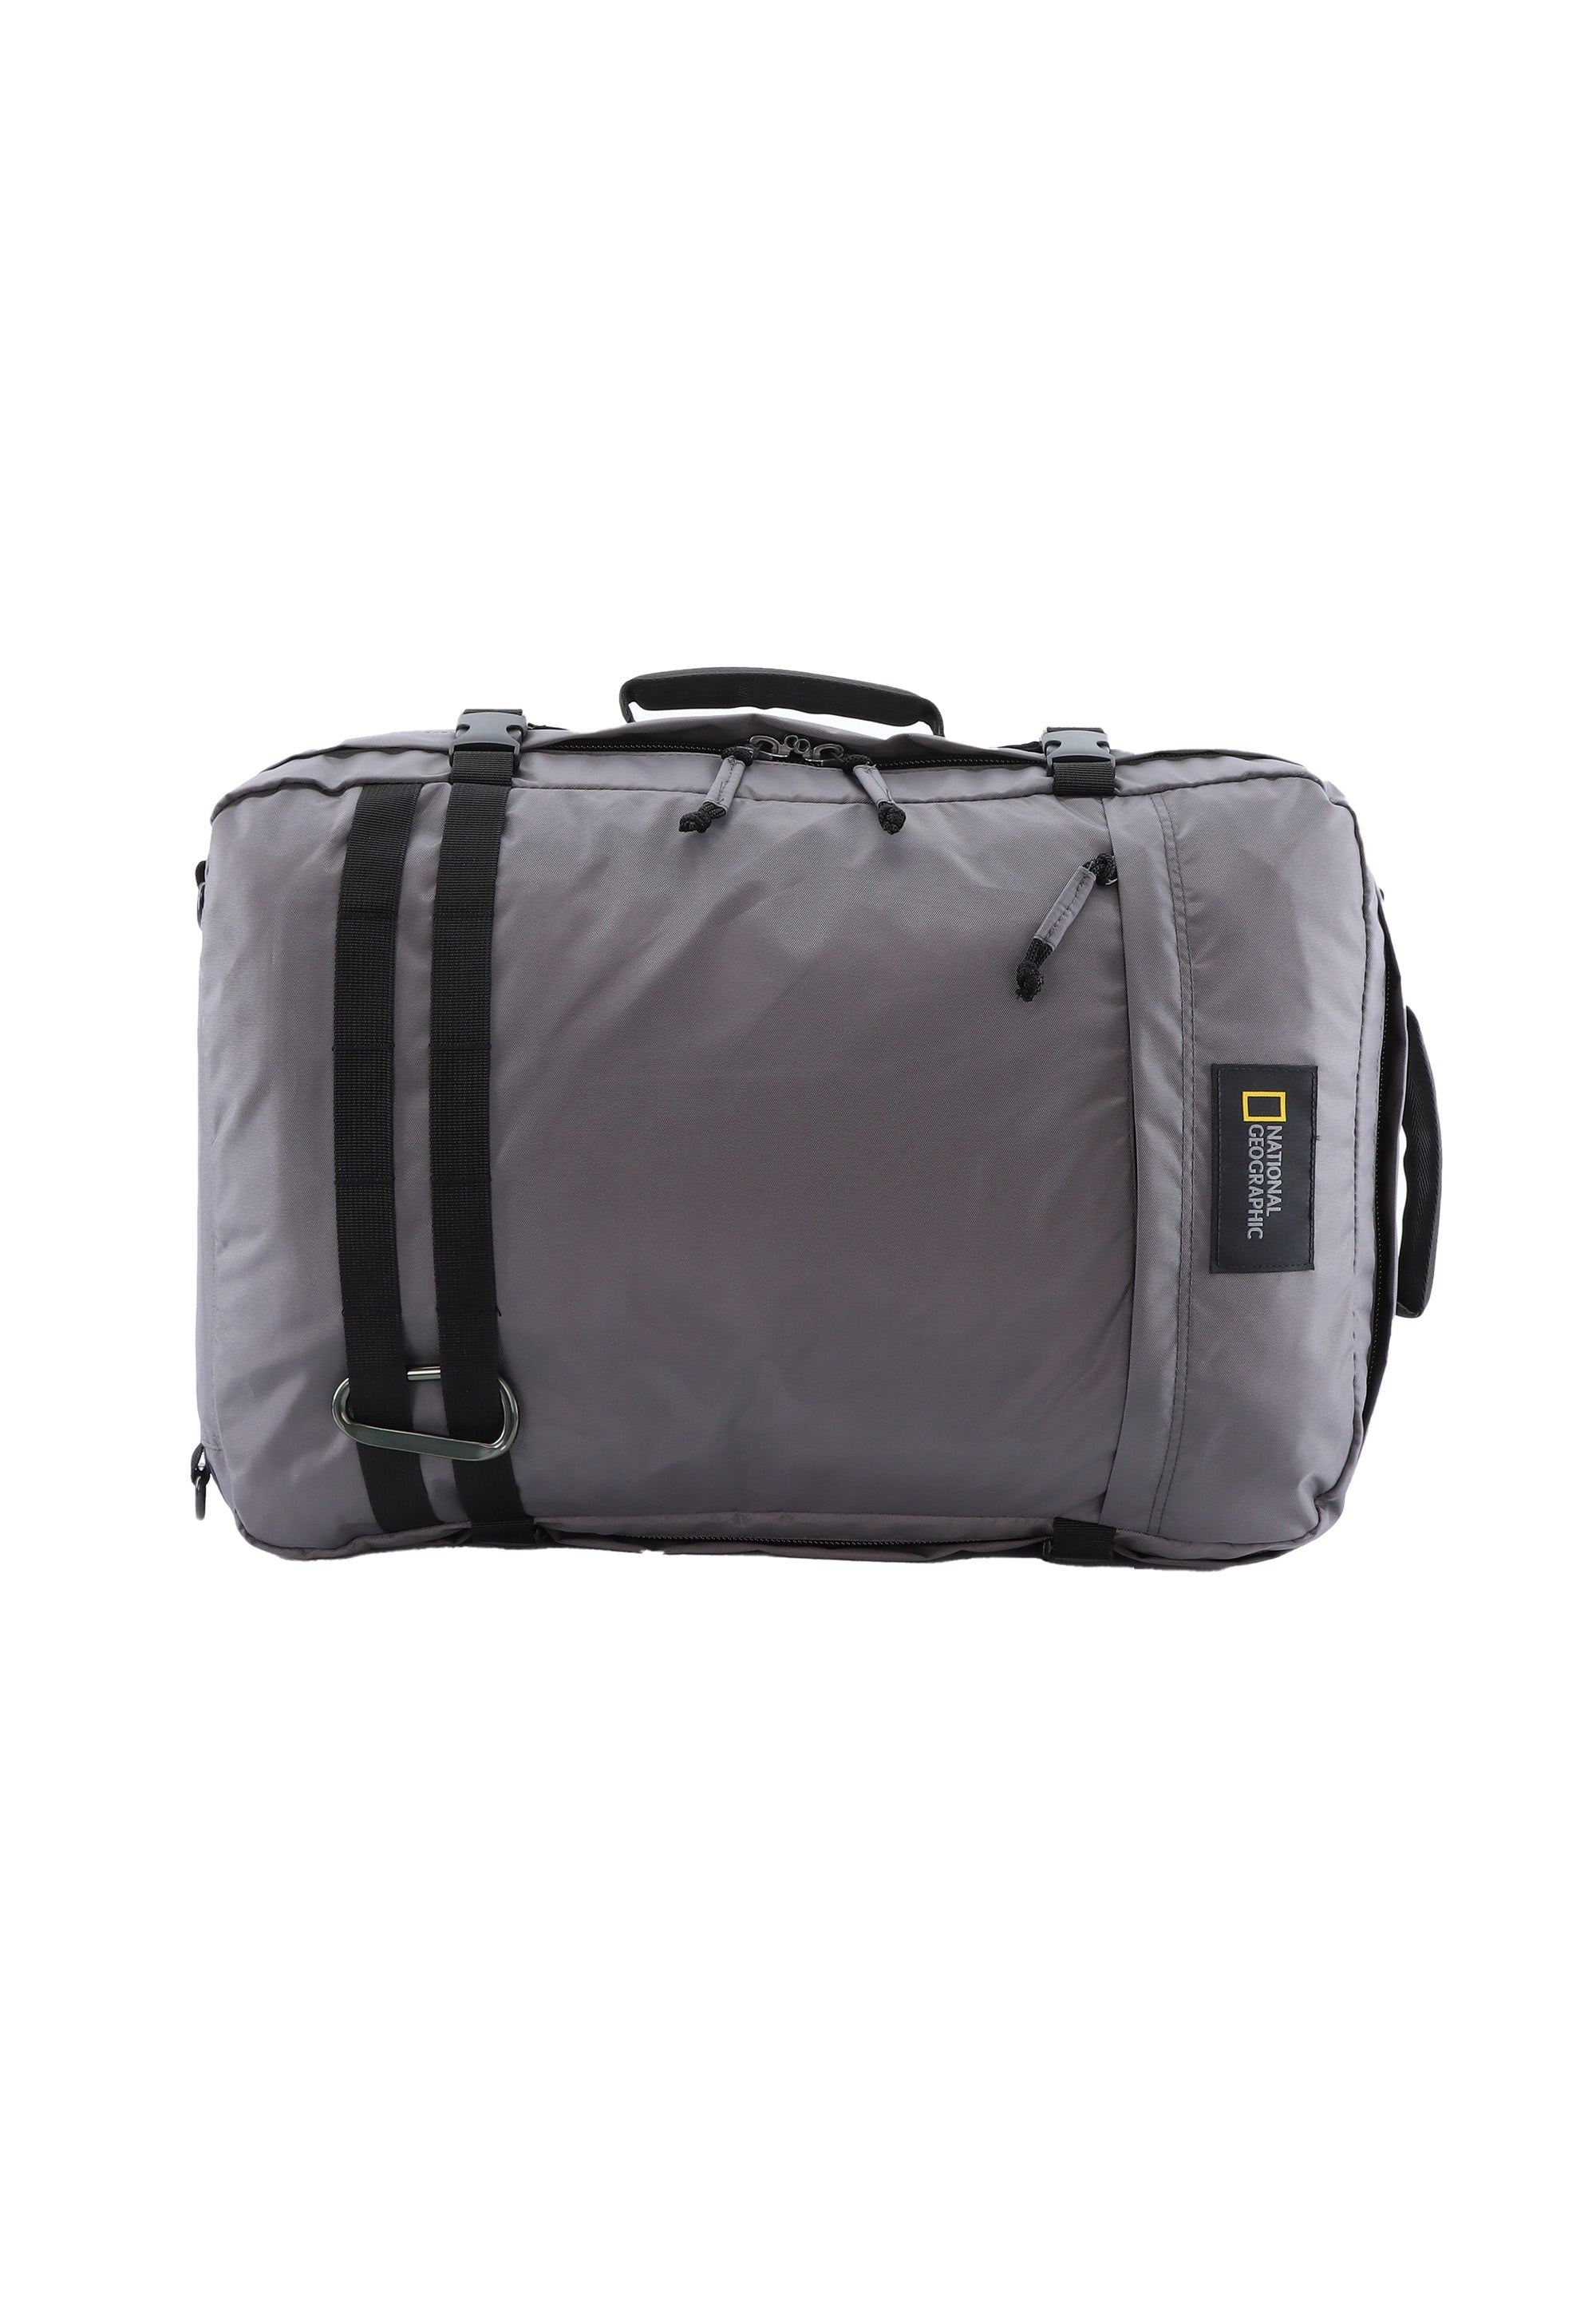 National Geographic - Hybrid | Rucksack-Tasche mit 3 Funktionen | Anthrazit